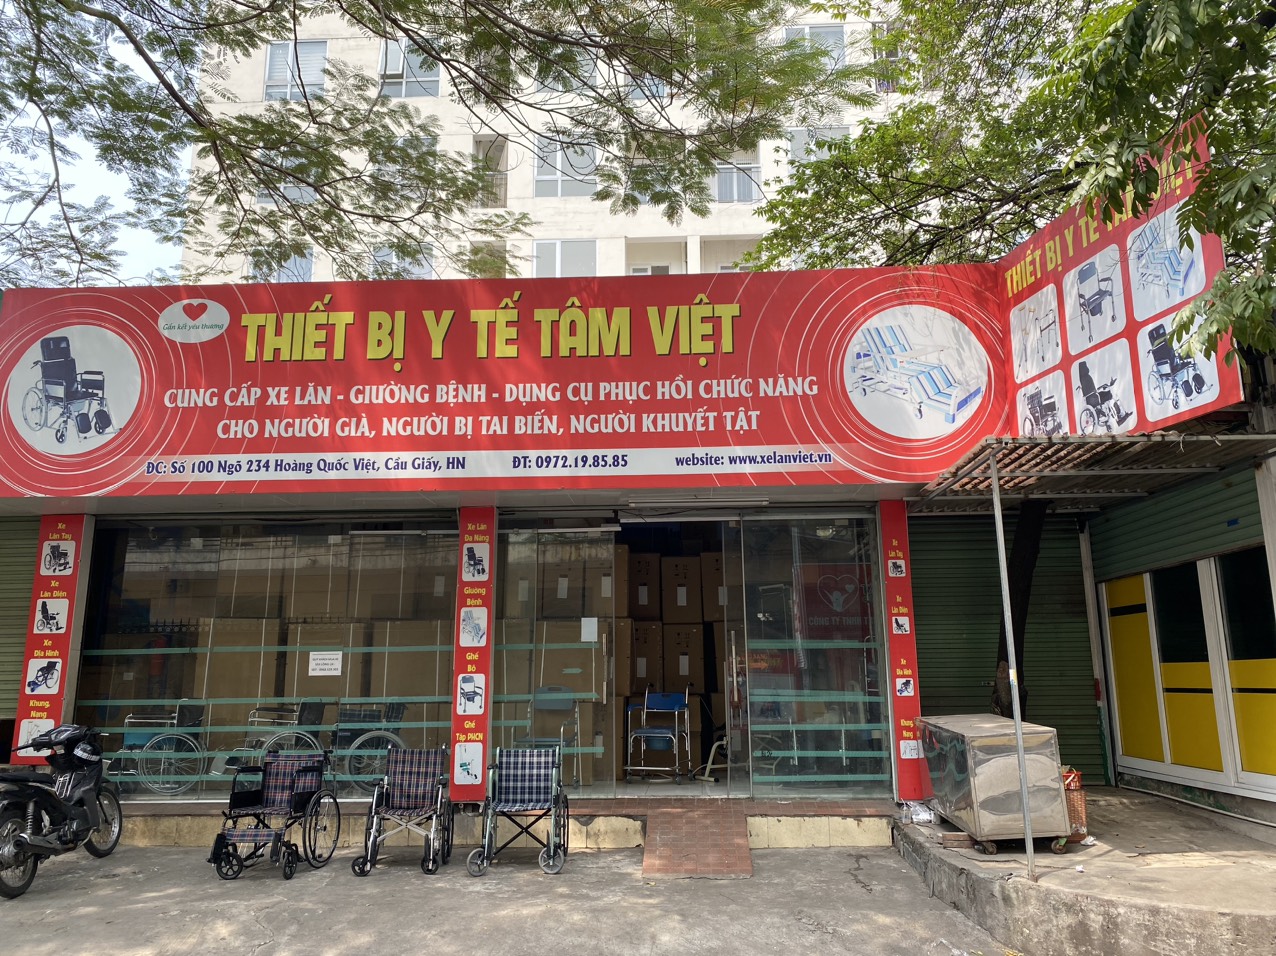 Tâm Việt chuyên cung cấp xe lăn điện chính hãng, chất lượng